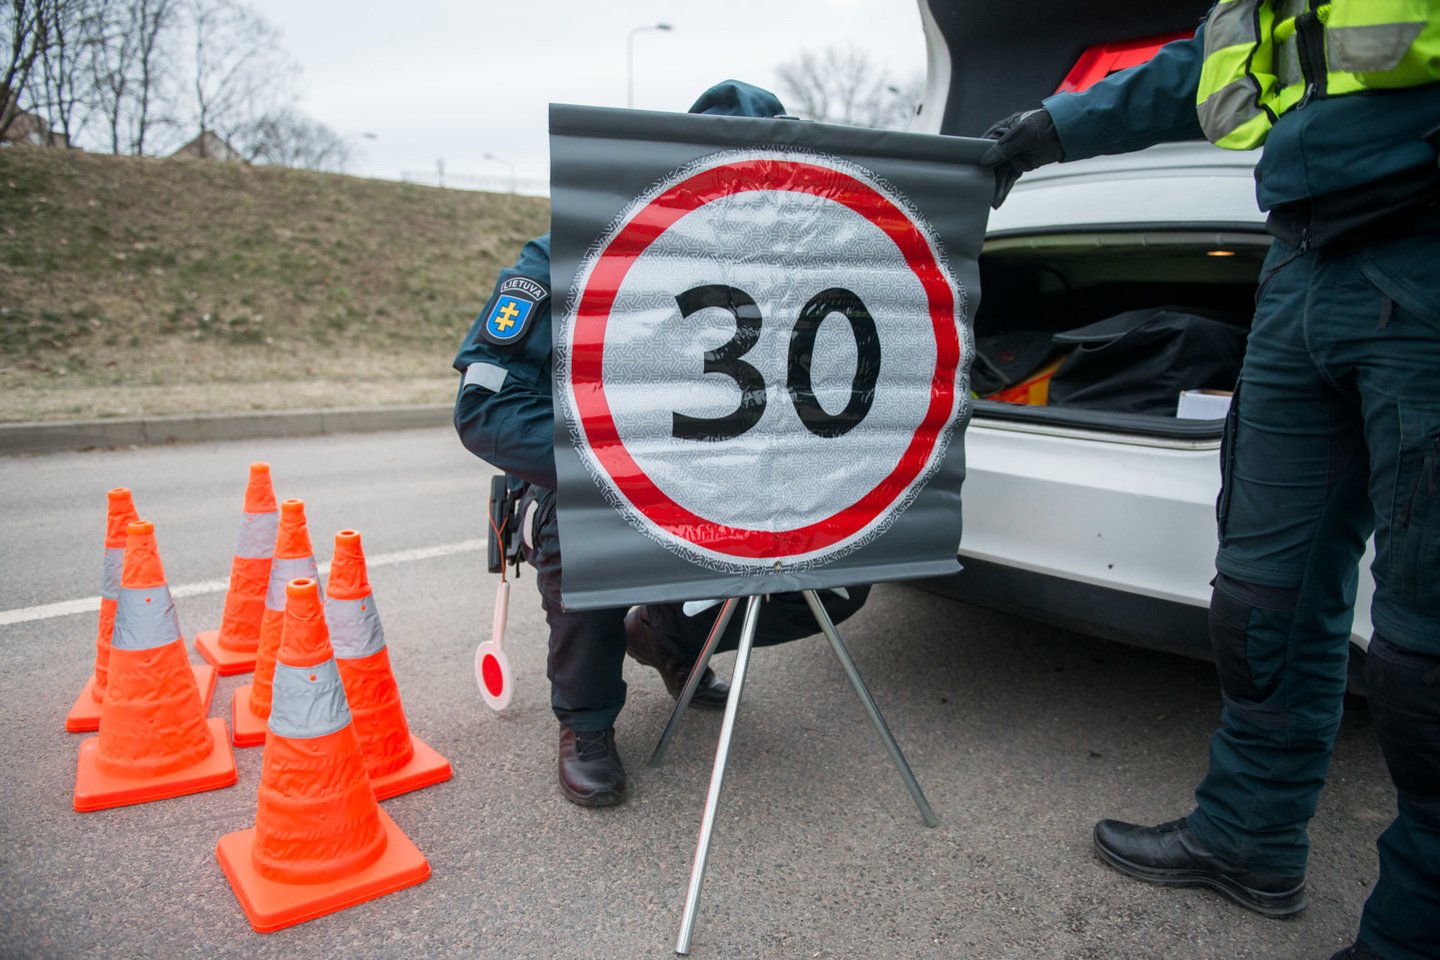 Nuo balandžio 1 dienos automagistralėse galima važiuoti 130 km/val. greičiu.<br>J.Stacevičiaus nuotr.